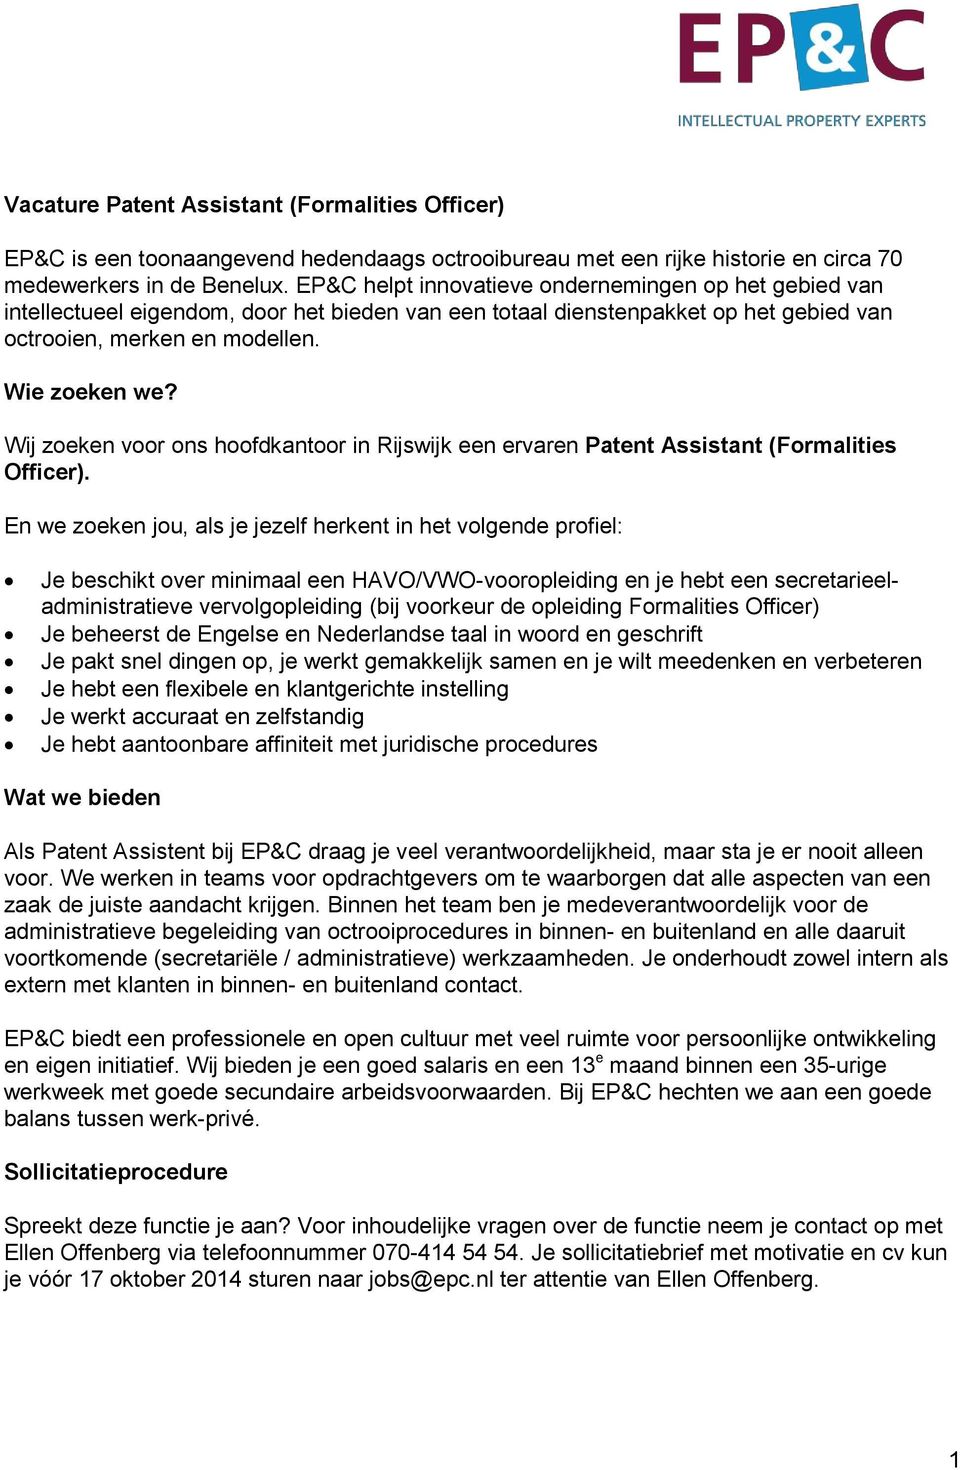 Wij zoeken voor ons hoofdkantoor in Rijswijk een ervaren Patent Assistant (Formalities Officer).